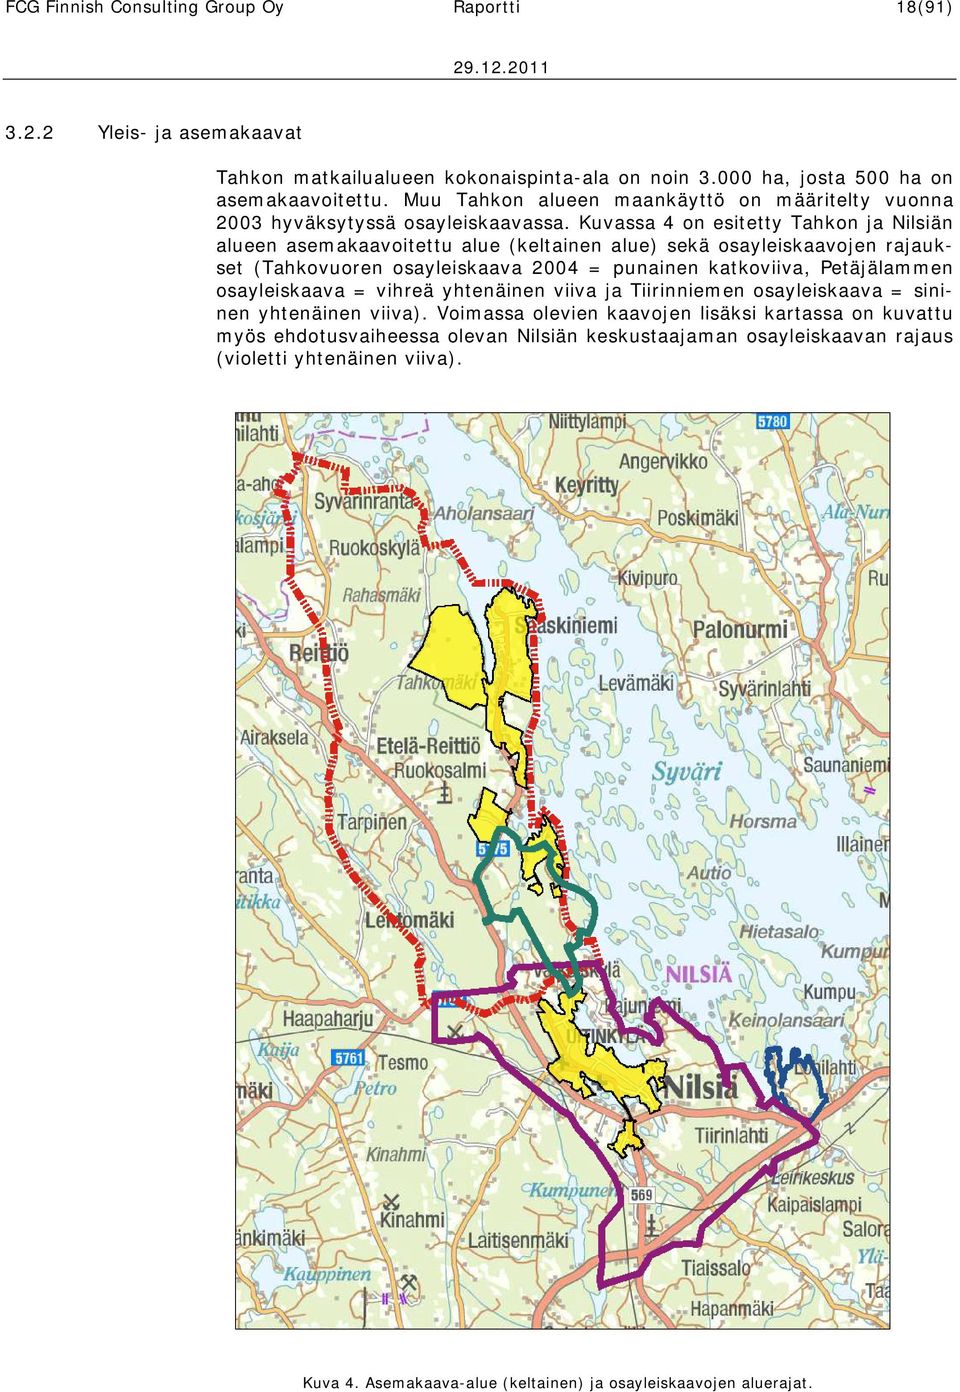 Kuvassa 4 on esitetty Tahkon ja Nilsiän alueen asemakaavoitettu alue (keltainen alue) sekä osayleiskaavojen rajaukset (Tahkovuoren osayleiskaava 2004 = punainen katkoviiva, Petäjälammen